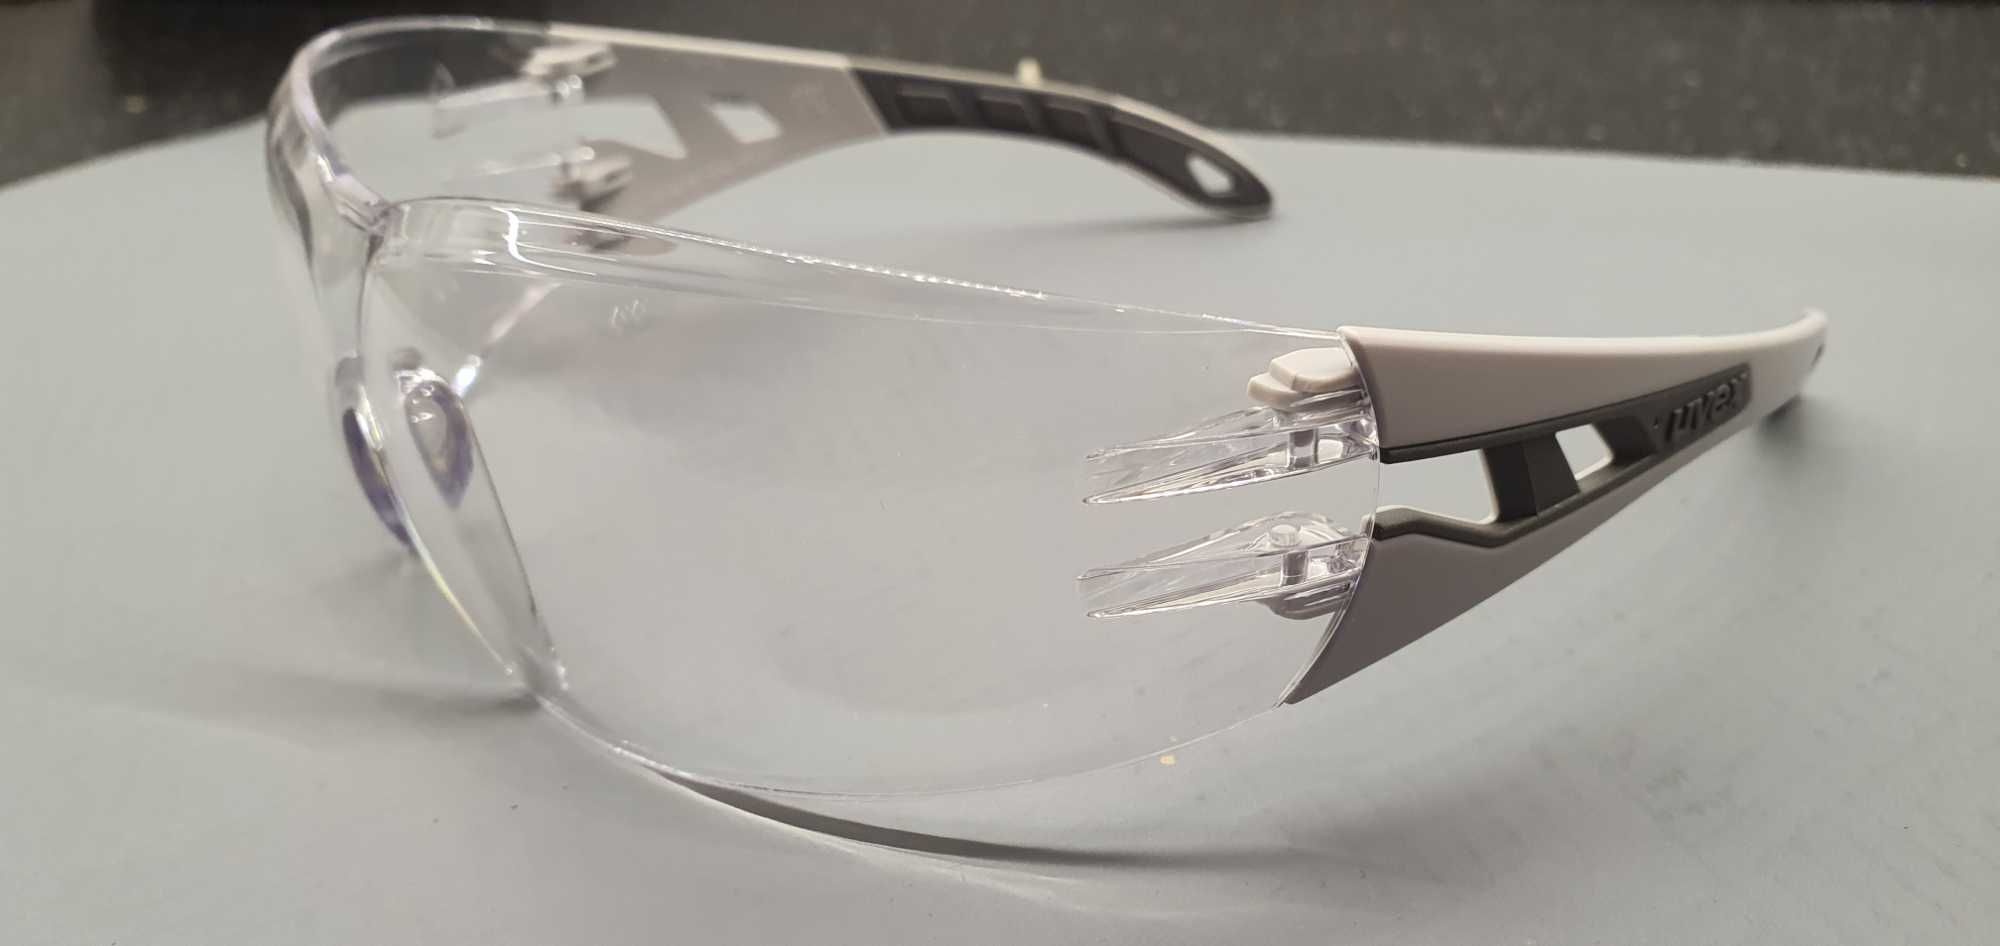 Okulary rowerowe UVEX jasno/szare, szkło przezroczyste